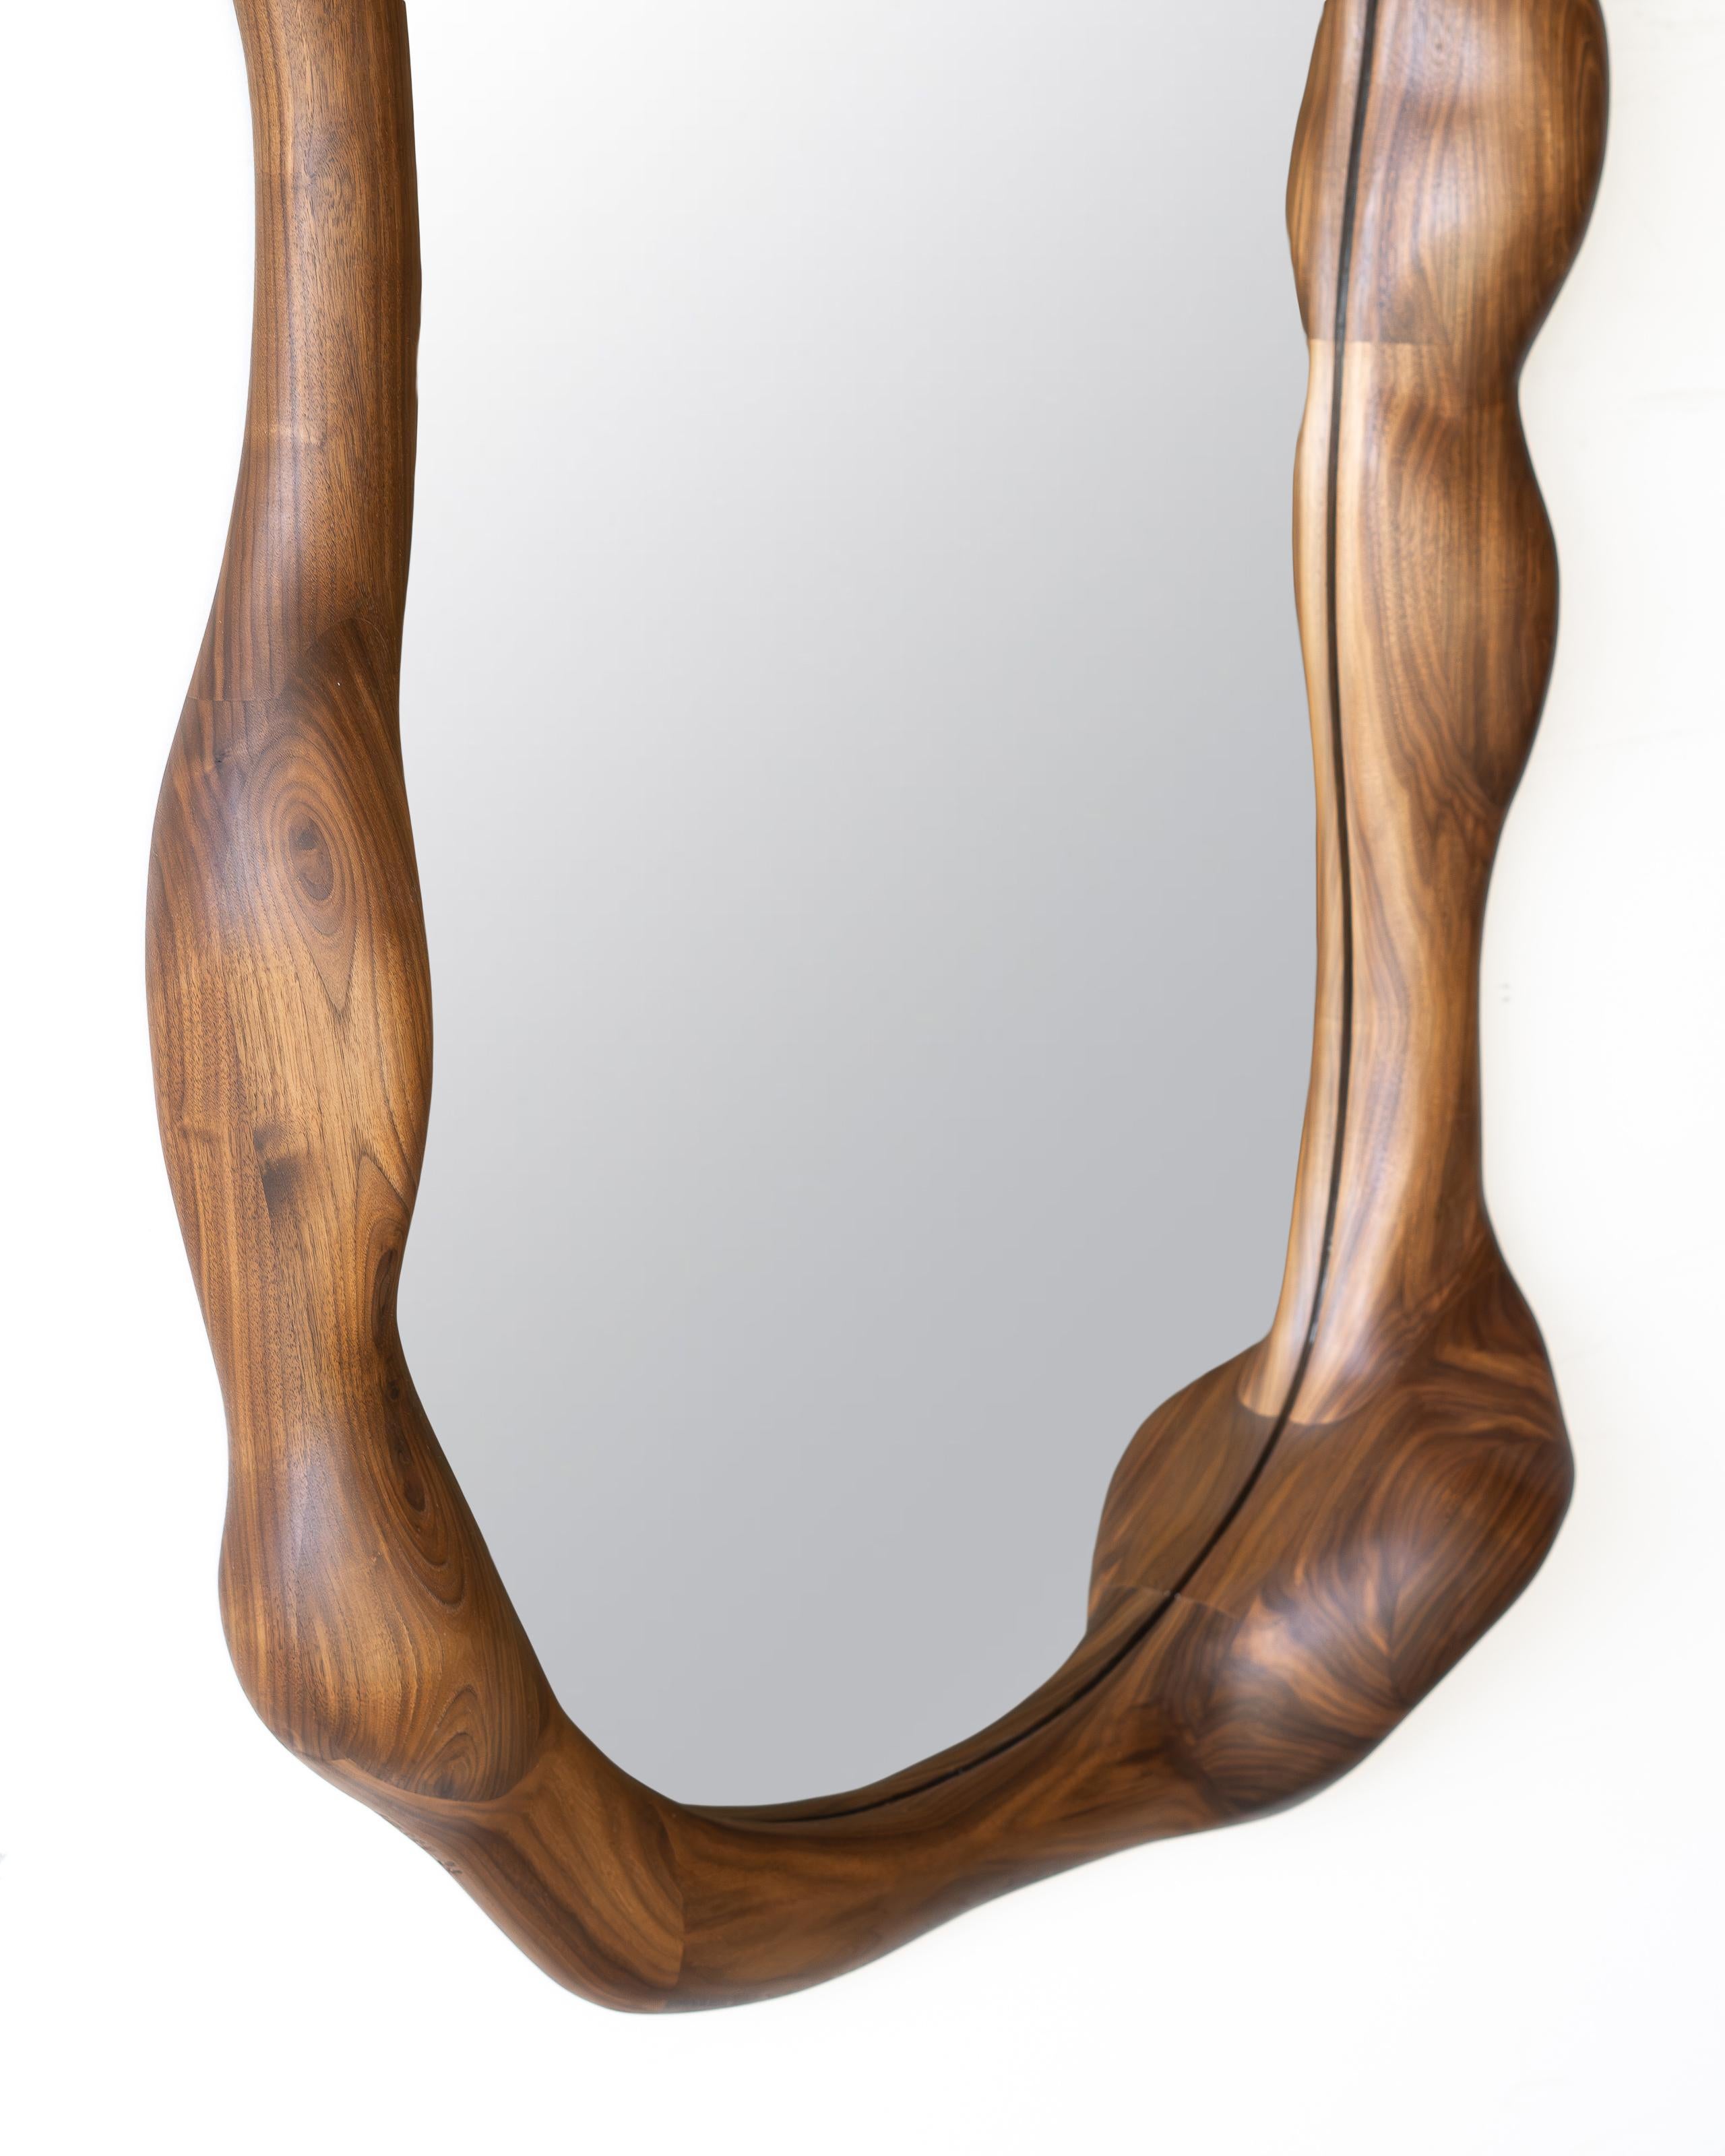 Le cadre du miroir est façonné à l'aide de divers outils manuels, ce qui rend chaque pièce unique avec son propre grain de bois distinctif. Il est fabriqué en bois de noyer de haute qualité et fini avec une huile à base de cire dure. 

Le miroir est